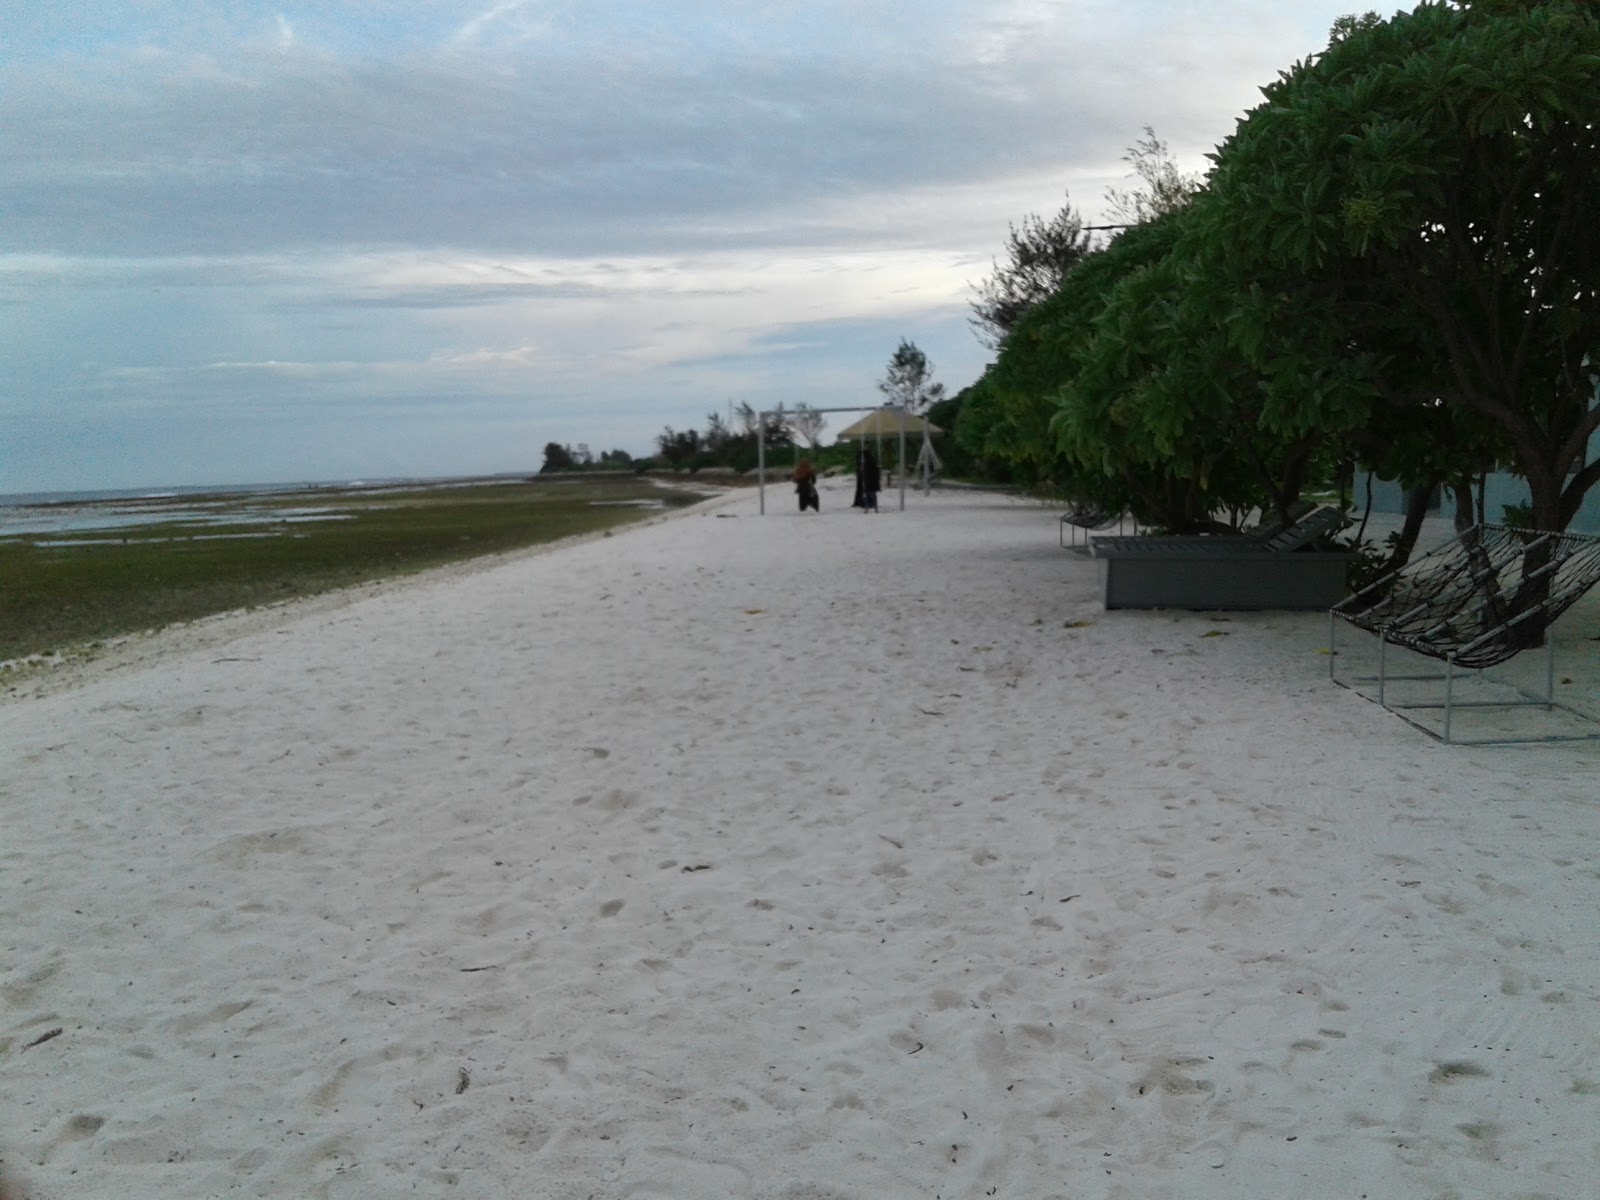 Villingili Beach II'in fotoğrafı geniş plaj ile birlikte